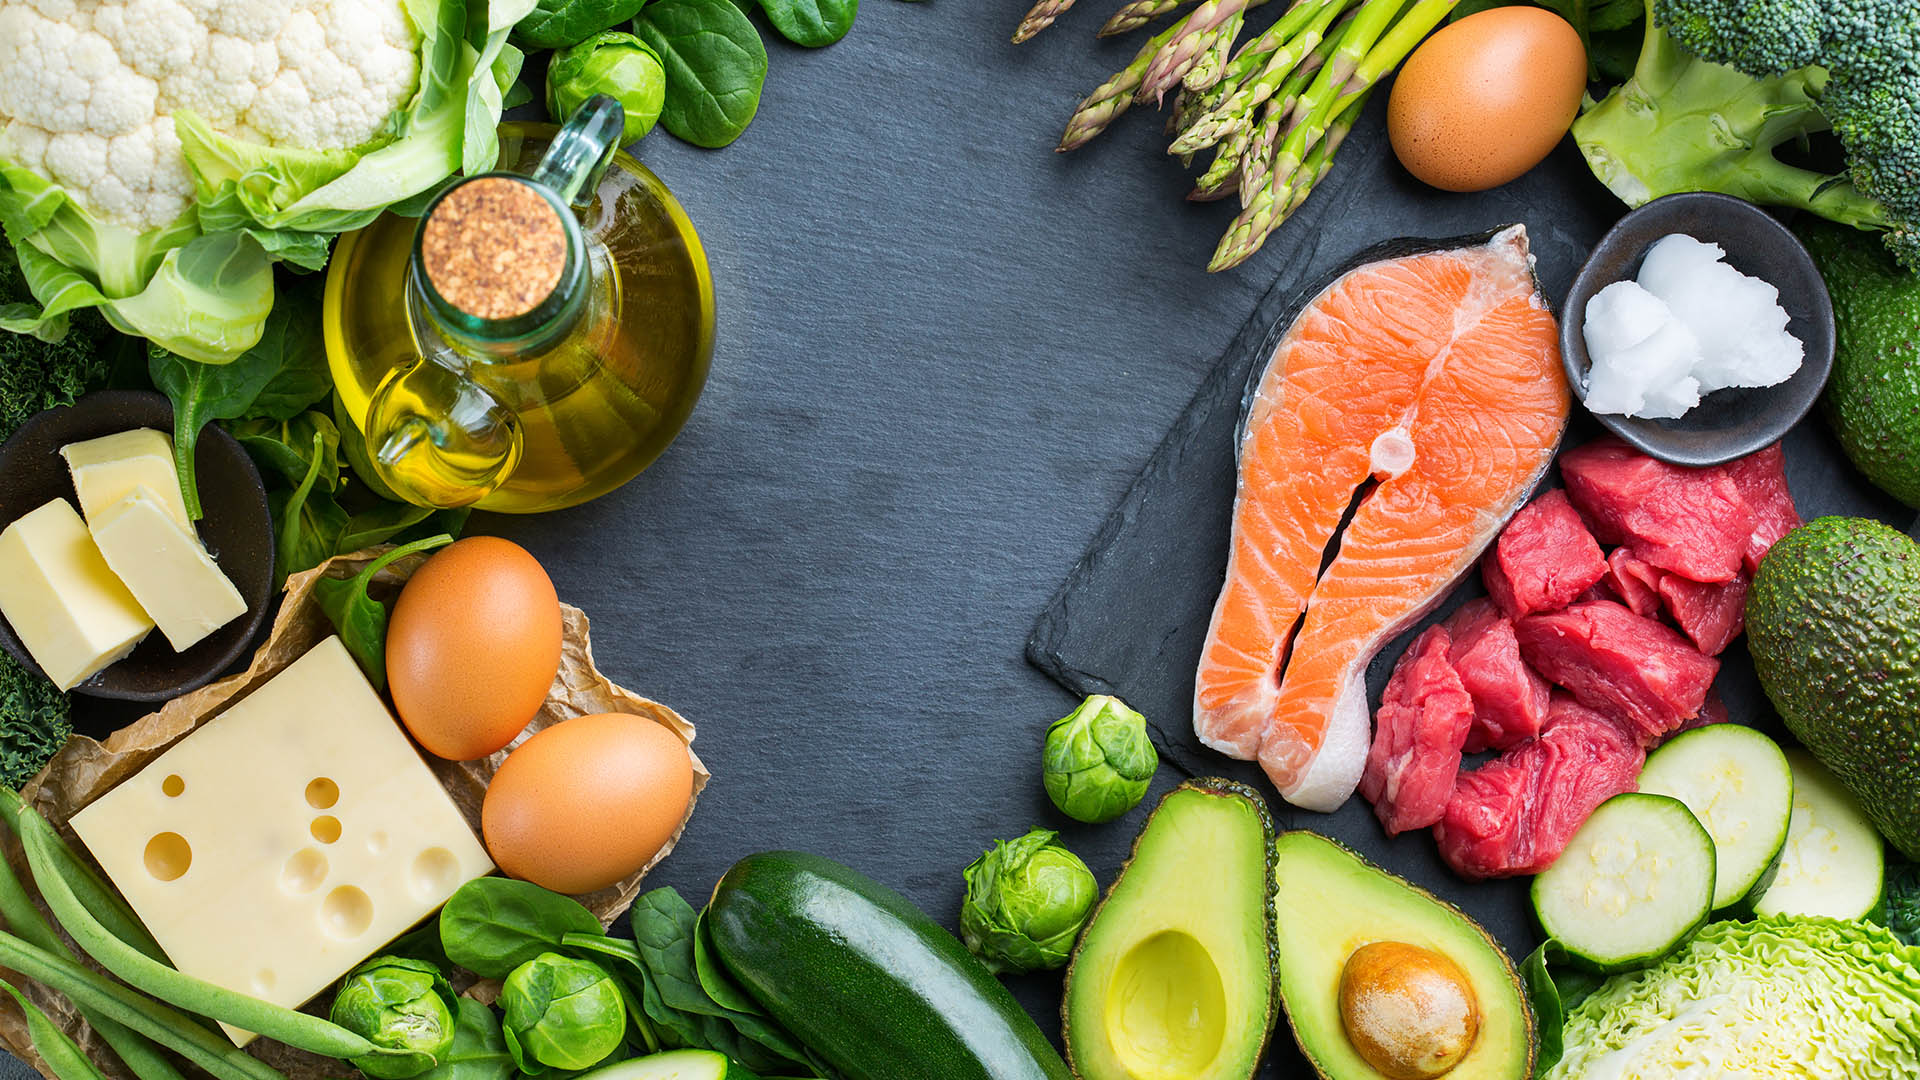 La dieta cetogénica, baja en hidratos de carbono y cumple con todas las proteínas que se necesita para una alimentación adecuada y balanceada (Shutterstock)